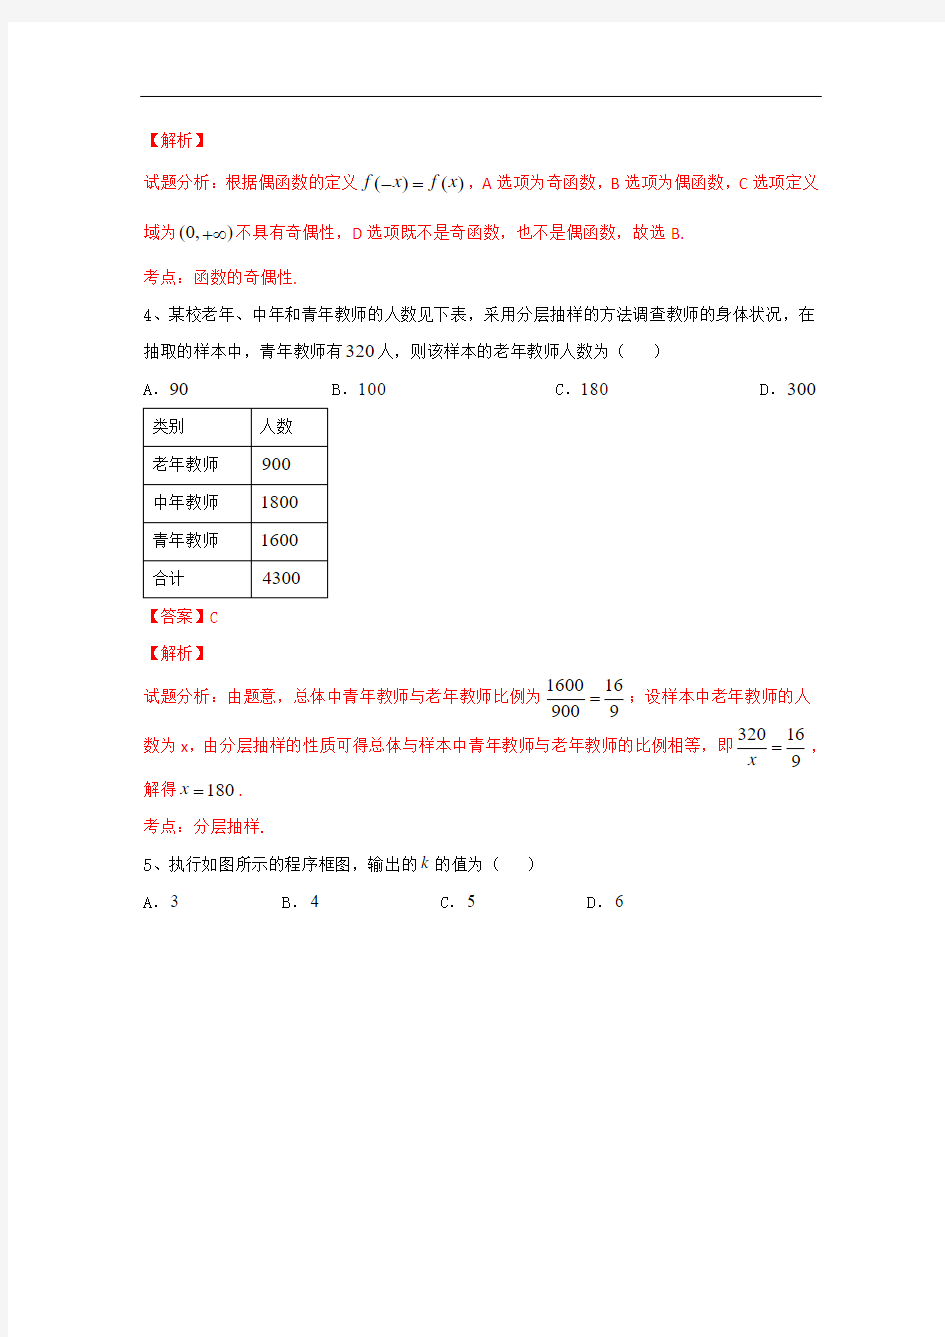 2015年高考真题——文科数学(北京卷) Word版含解析